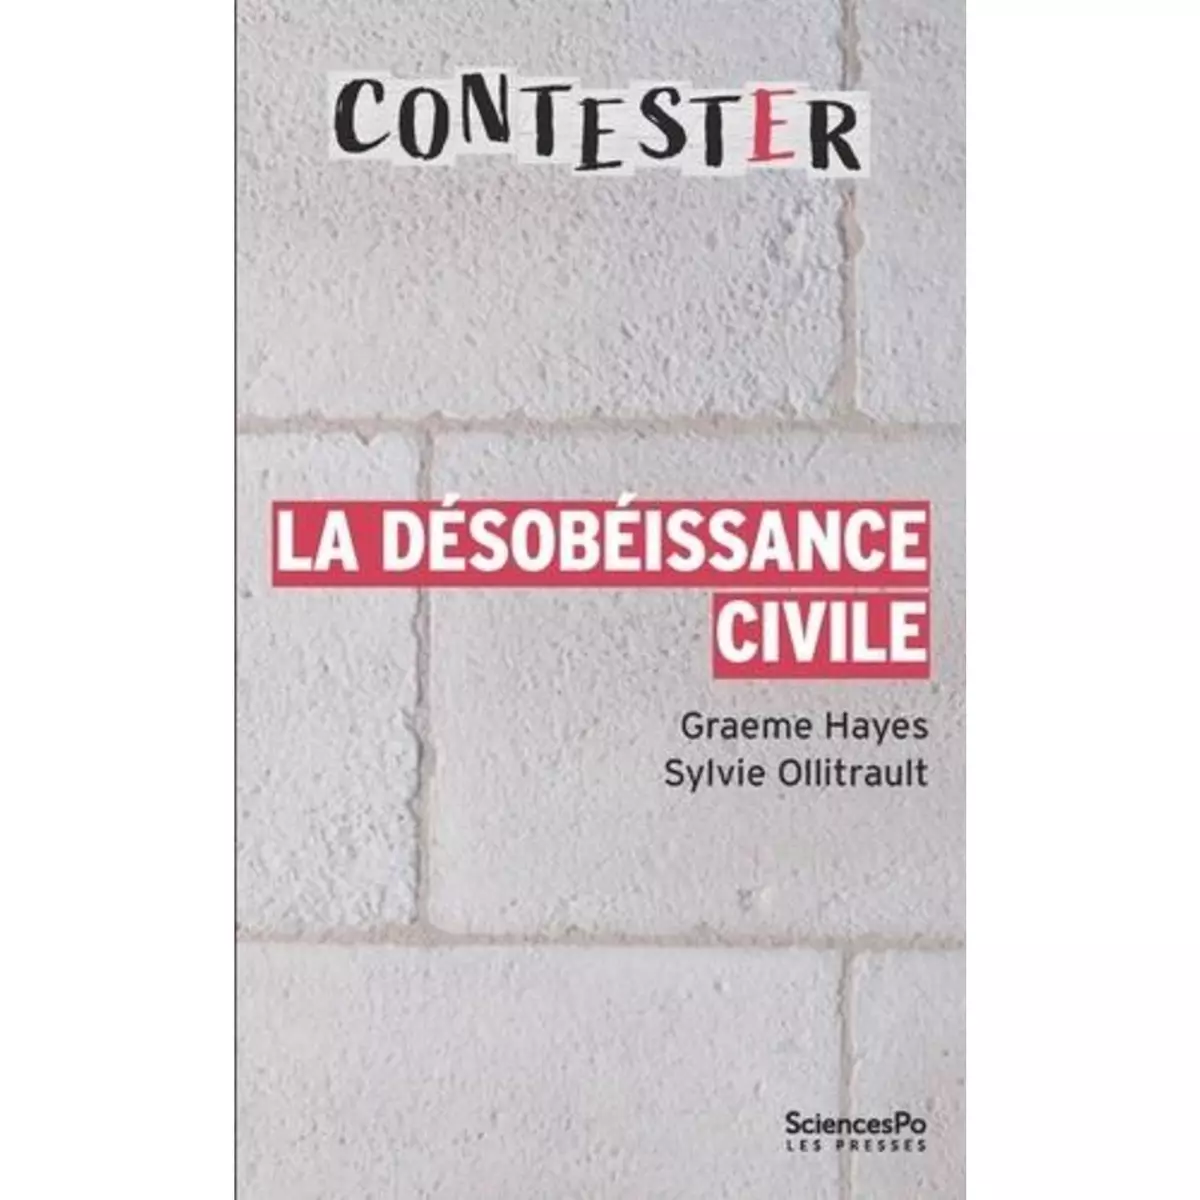  LA DESOBEISSANCE CIVILE. 3E EDITION REVUE ET AUGMENTEE, Hayes Graeme